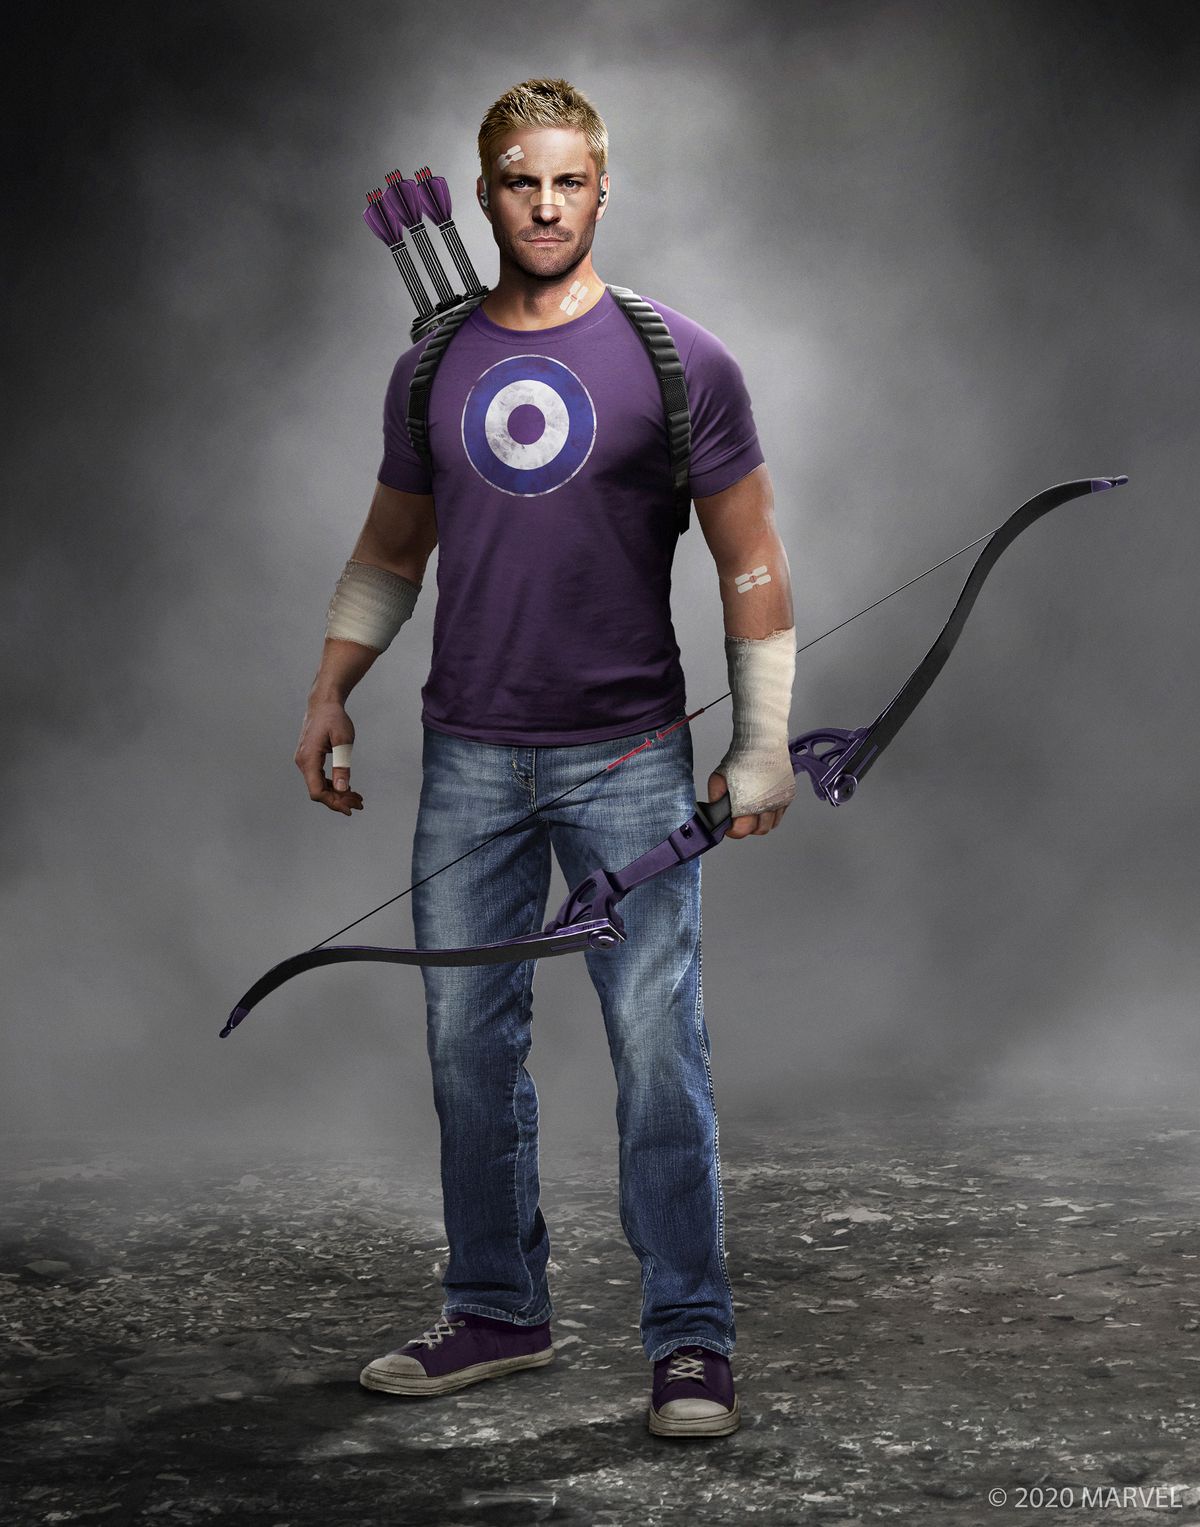 konceptkonst av Hawkeye / Clint Barton i Marvels Avengers, klädd i en lila T-shirt med en bullseye på och blå jeans, med en lila båge i vänster hand med en kogger som är slungad på ryggen och håller tre lila pilar